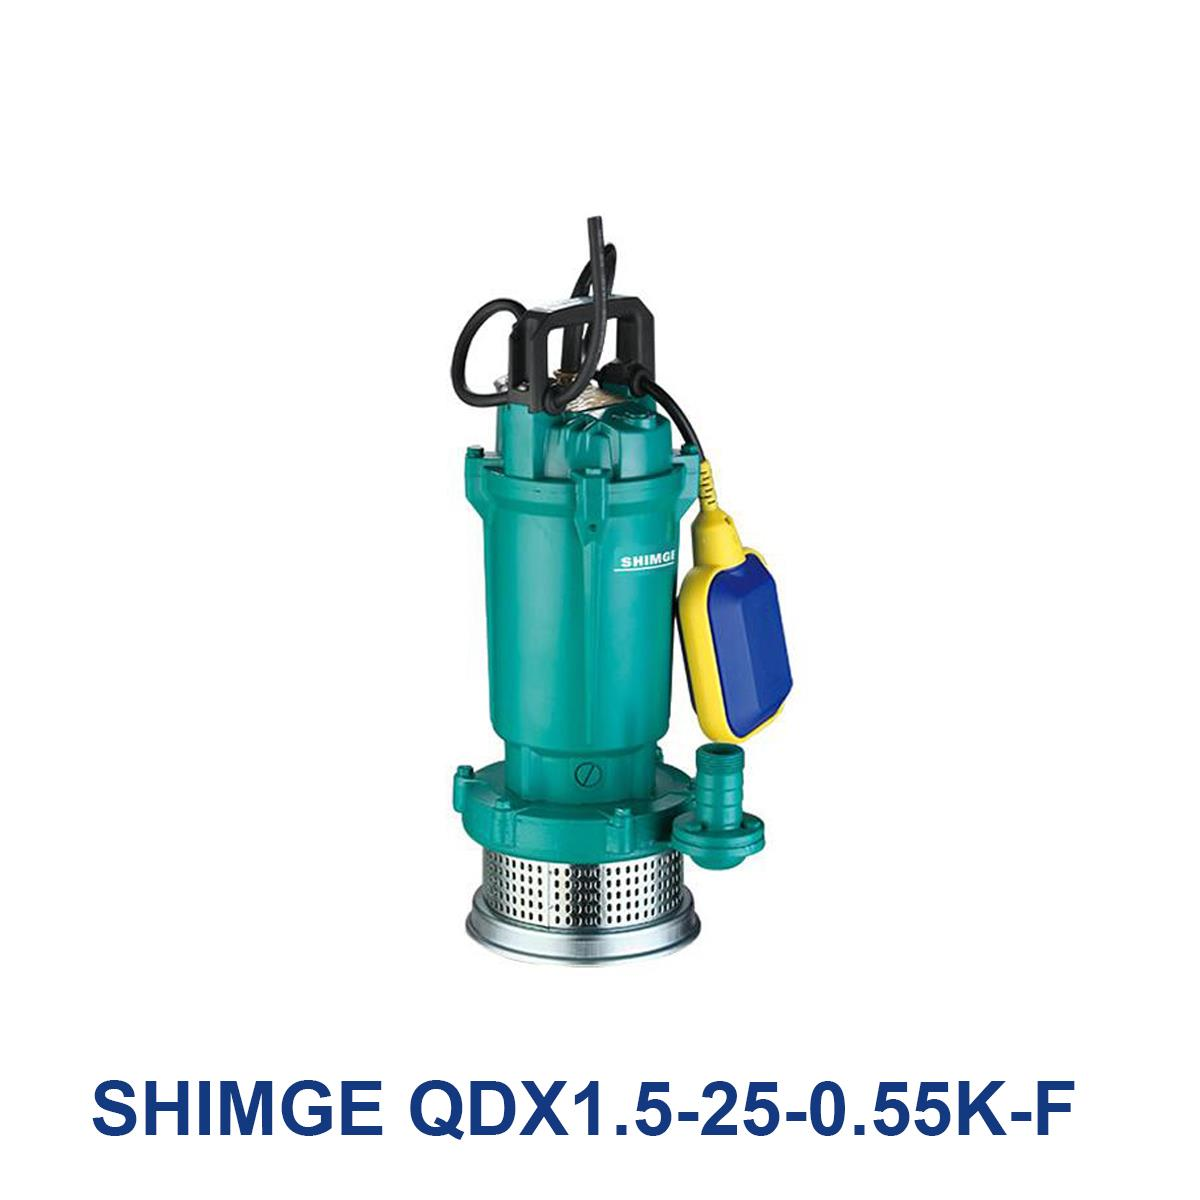 SHIMGE-QDX1.5-25-0.55K-F